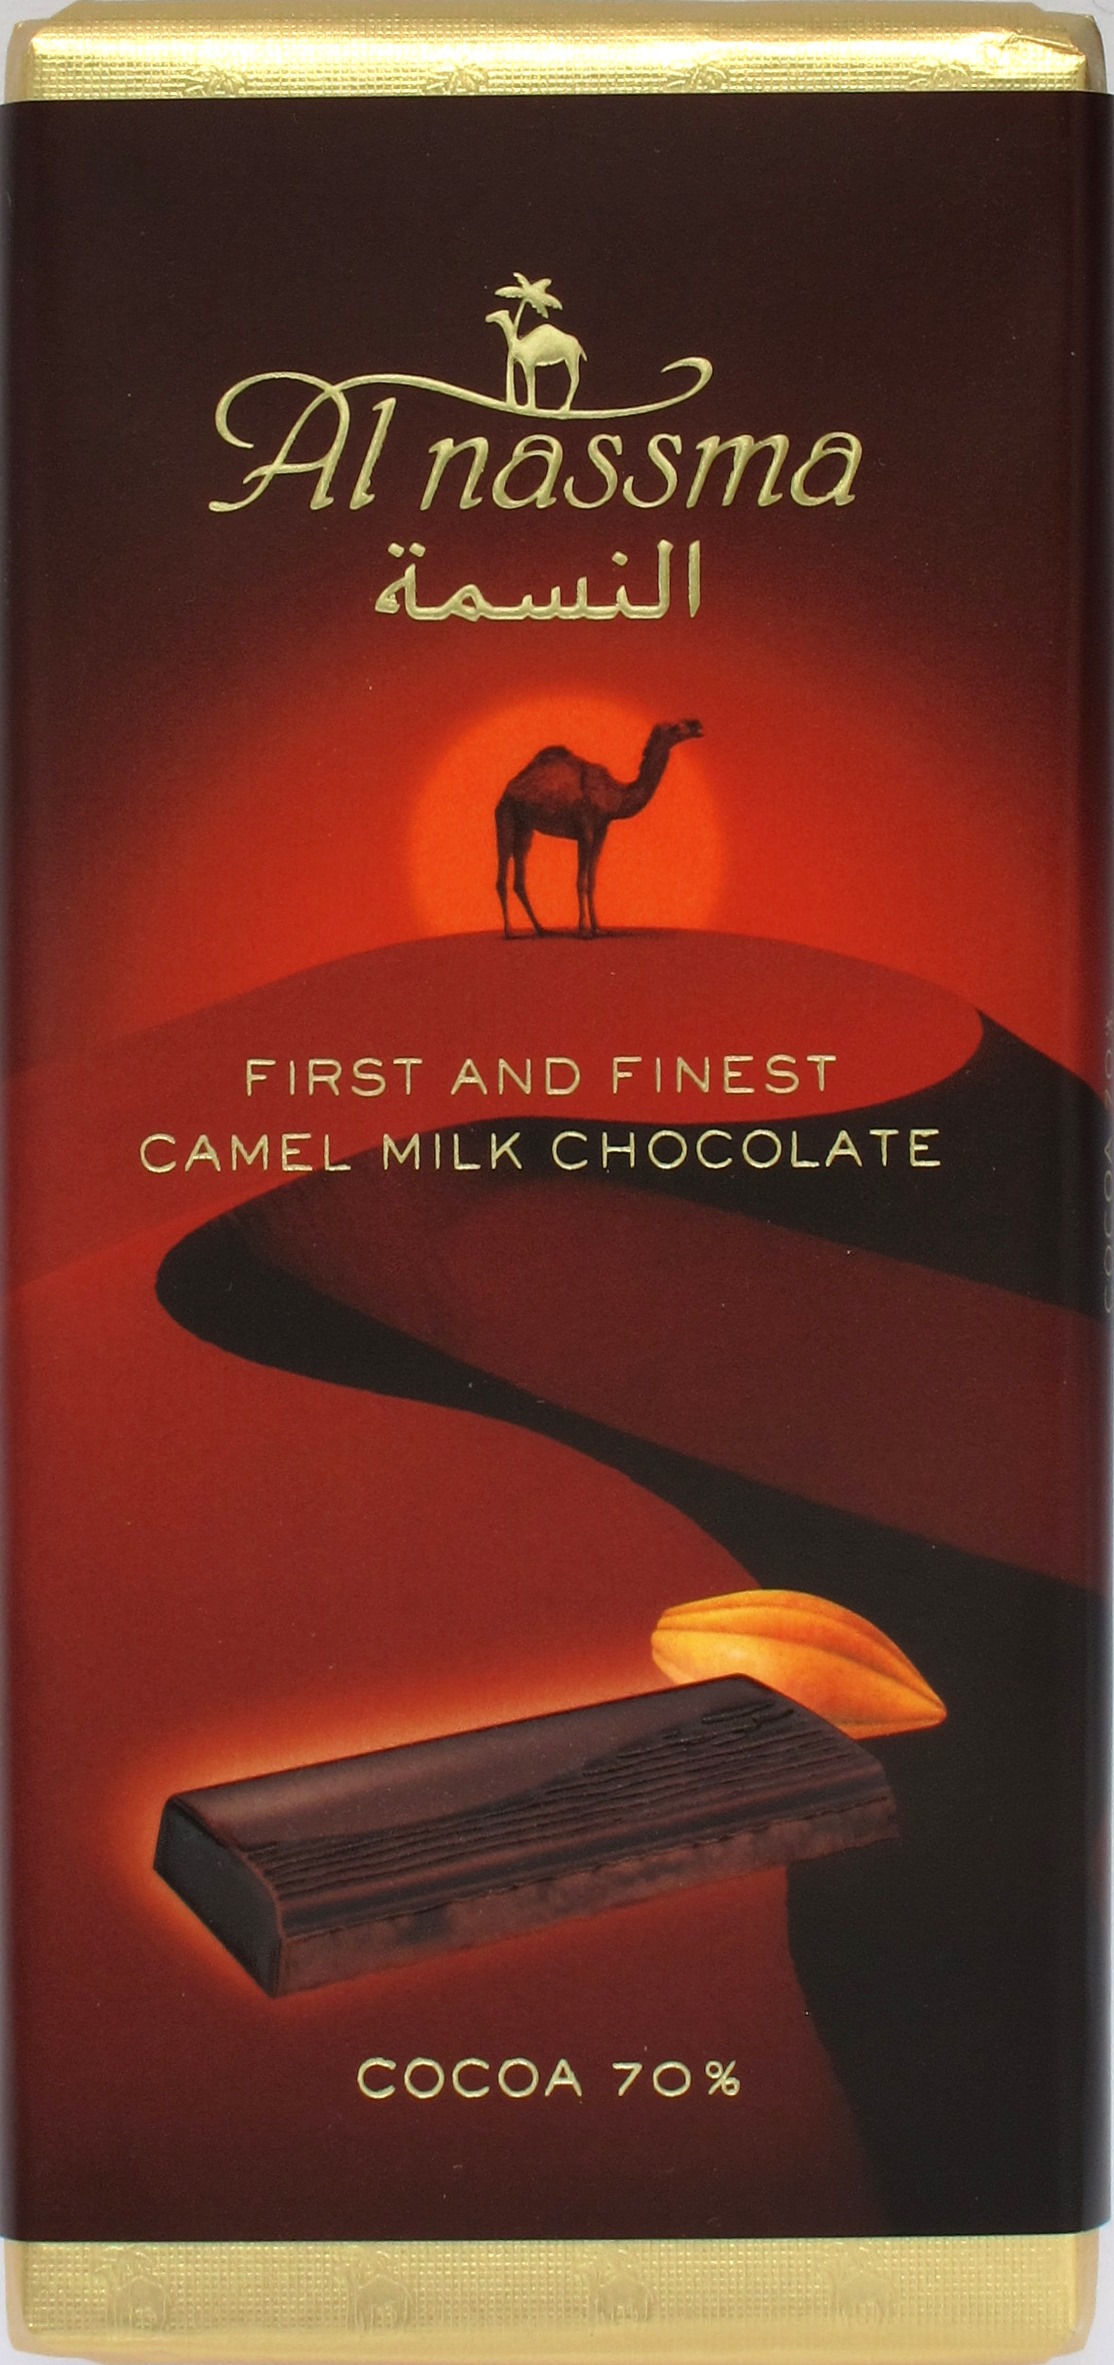 Al Nassma Bitterschokolade 70% mit Kamelmilch